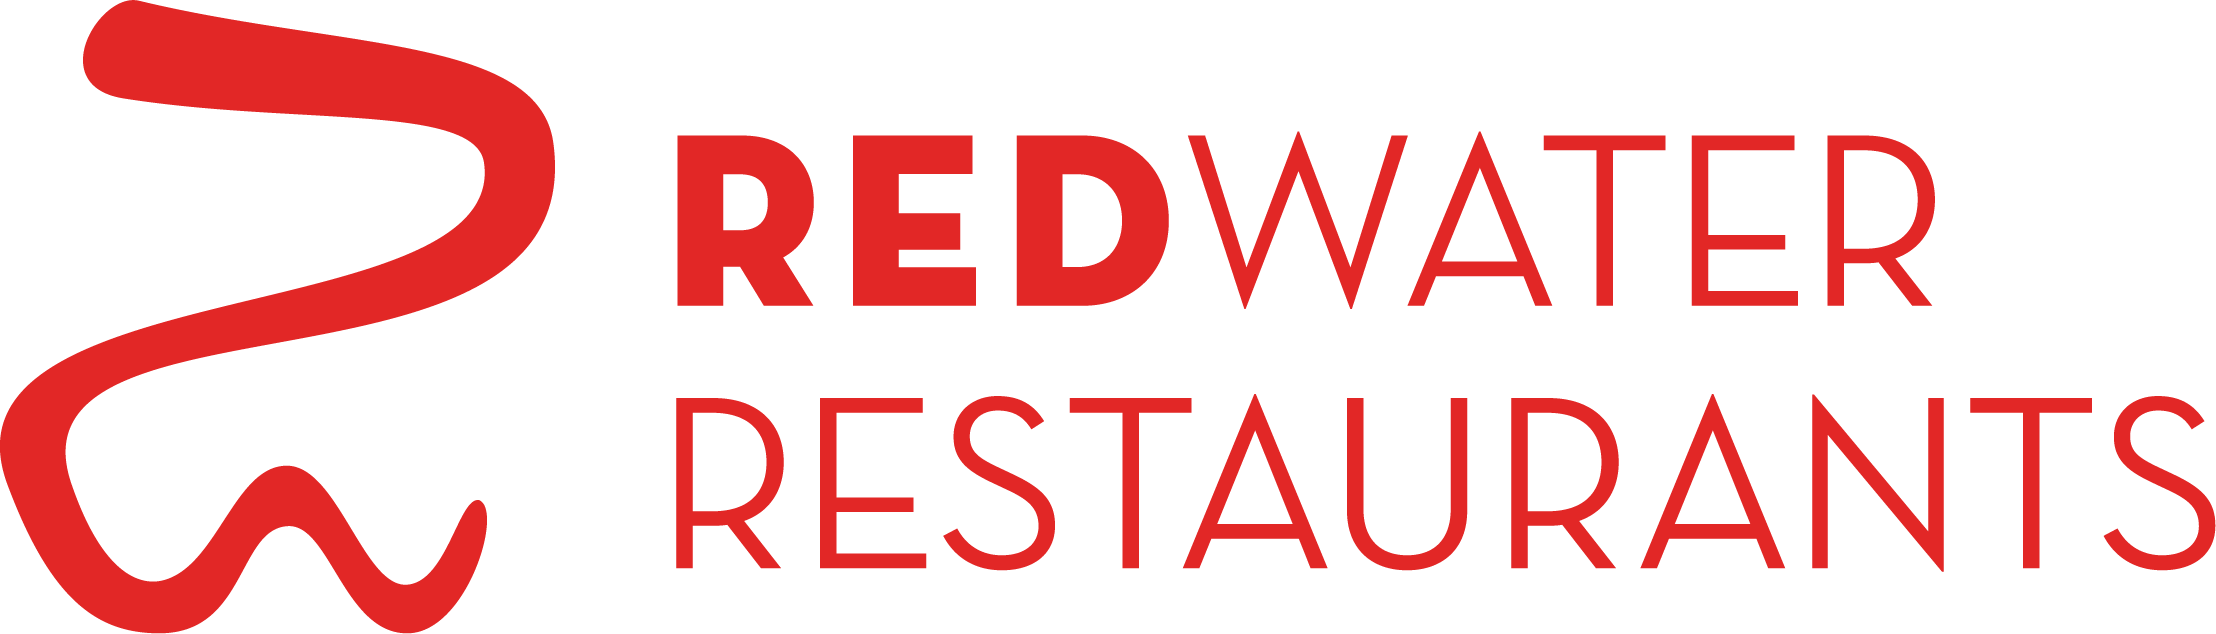 Amway Grand Plaza Logo